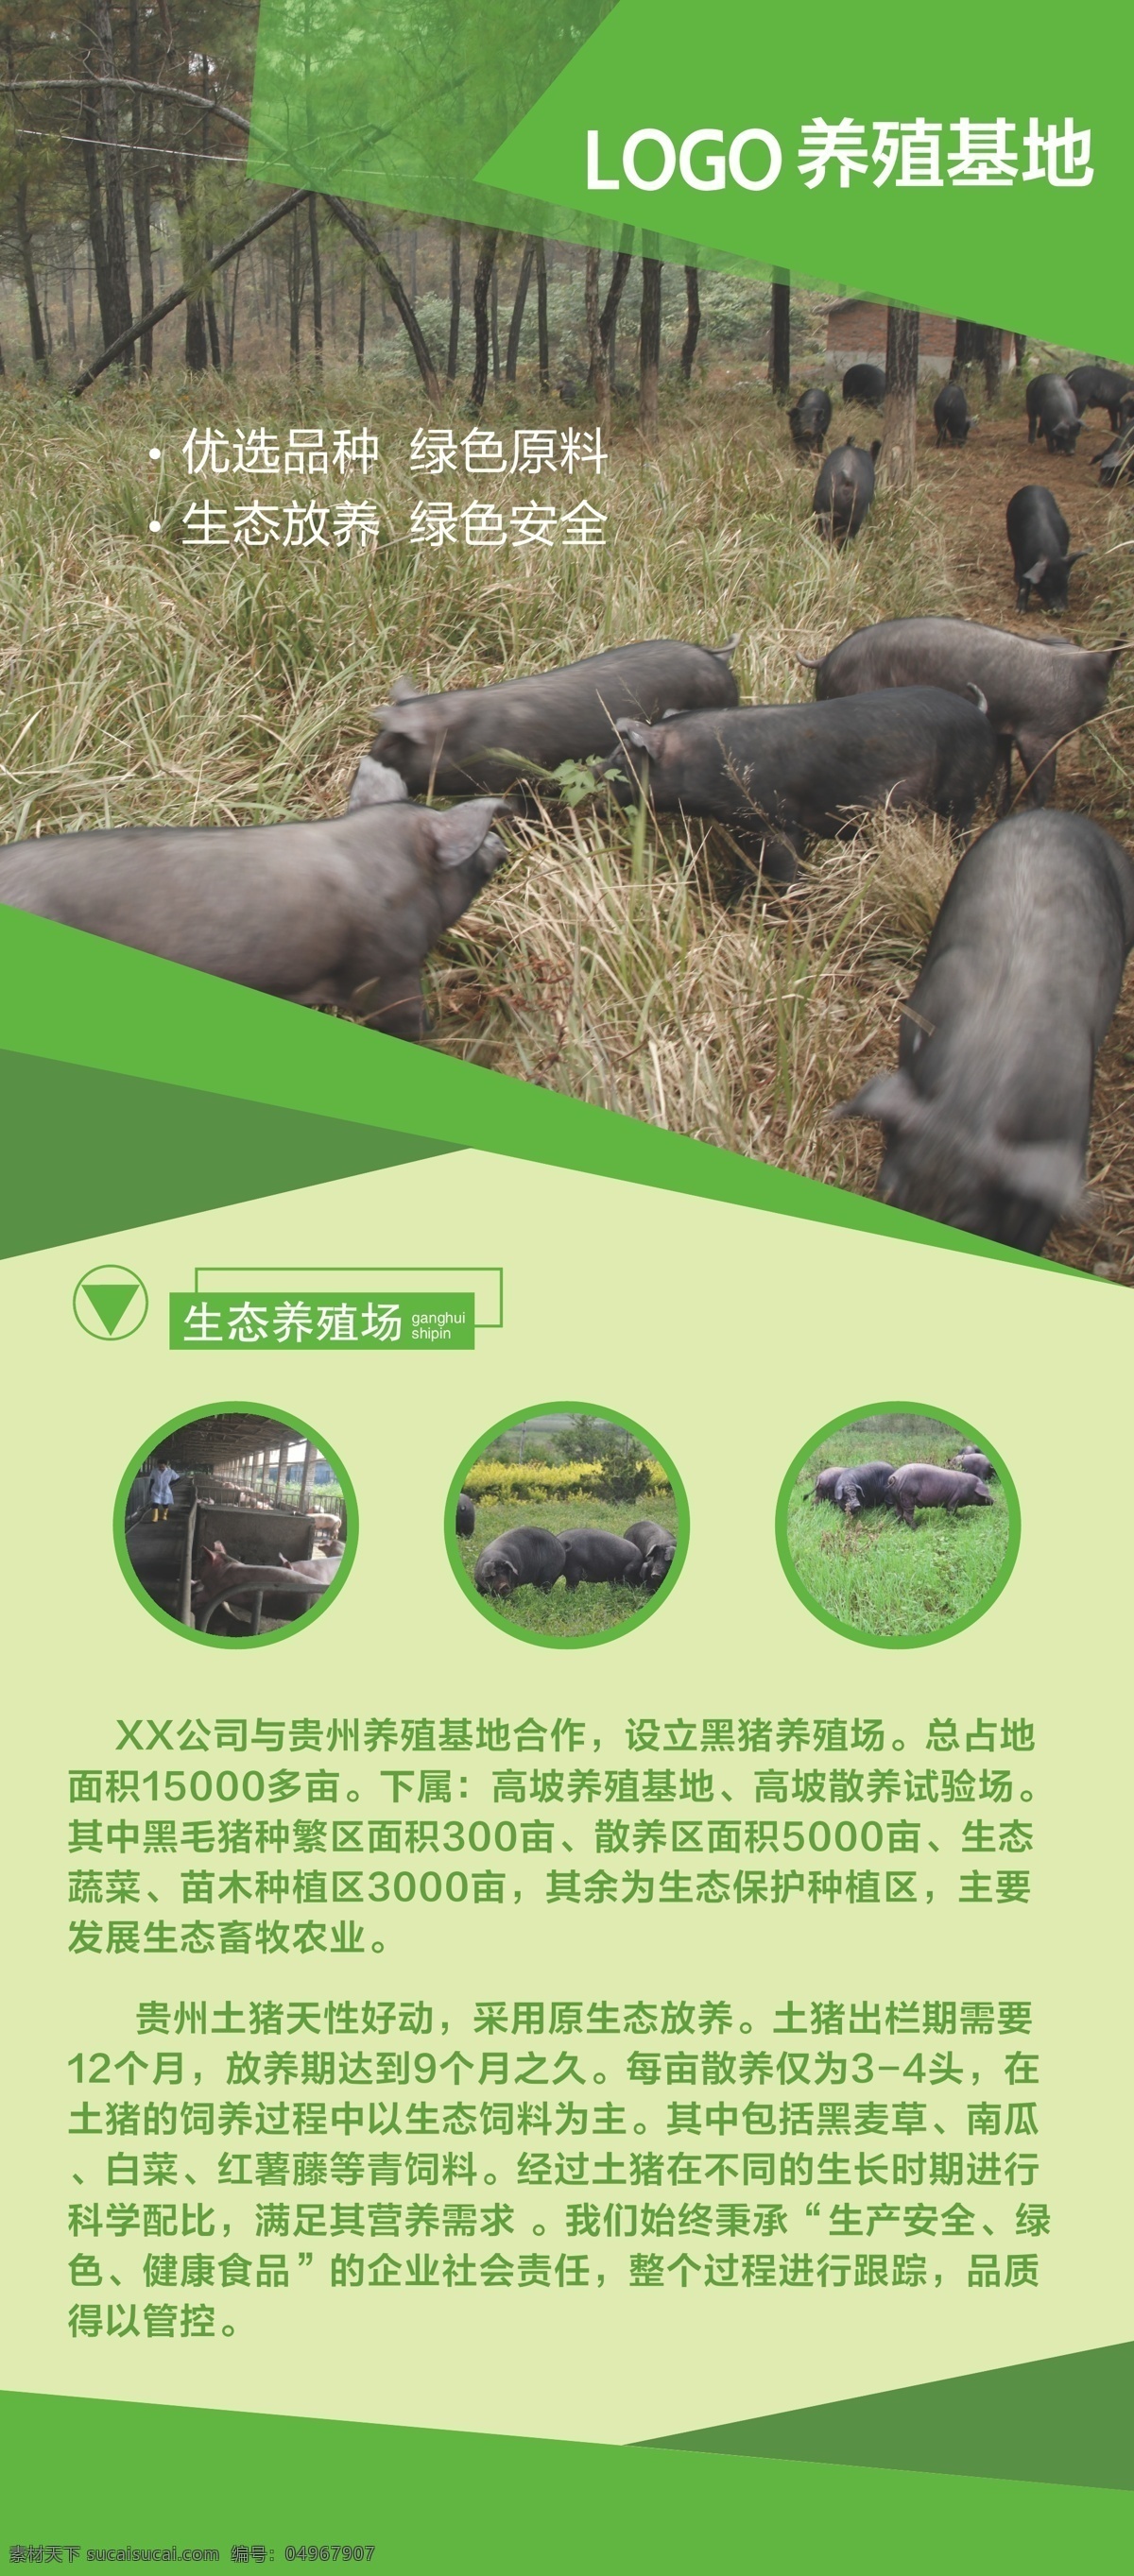 生态 养殖 基地 展架 生态养猪场 养殖基地展架 活动展架 贵州土猪 土猪肉 生态放养介绍